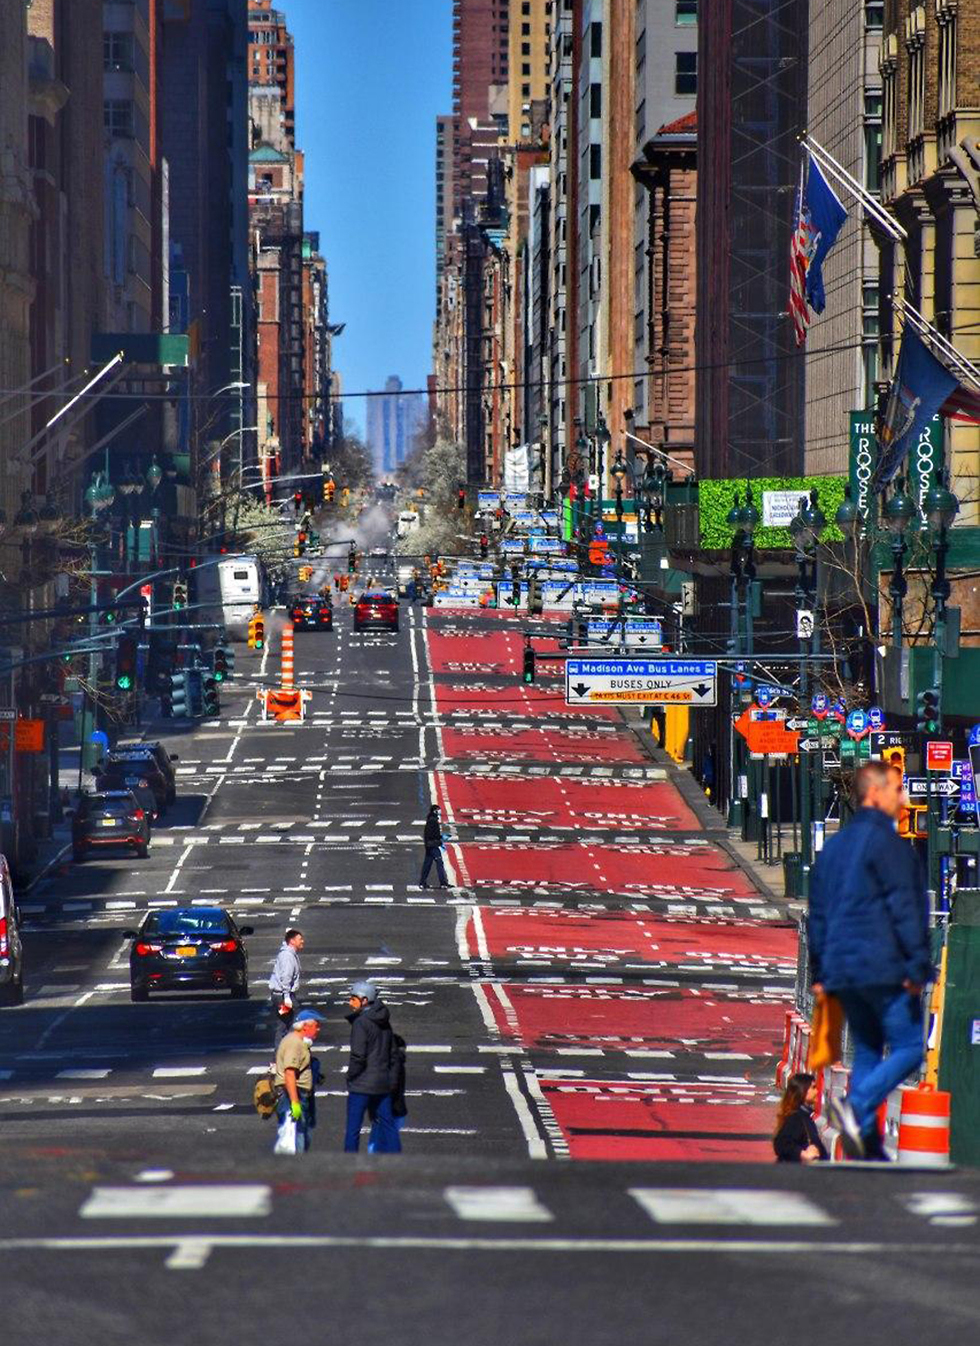 רחובות ניו יורק ריקים (צילום: ארז קולישבסקי)